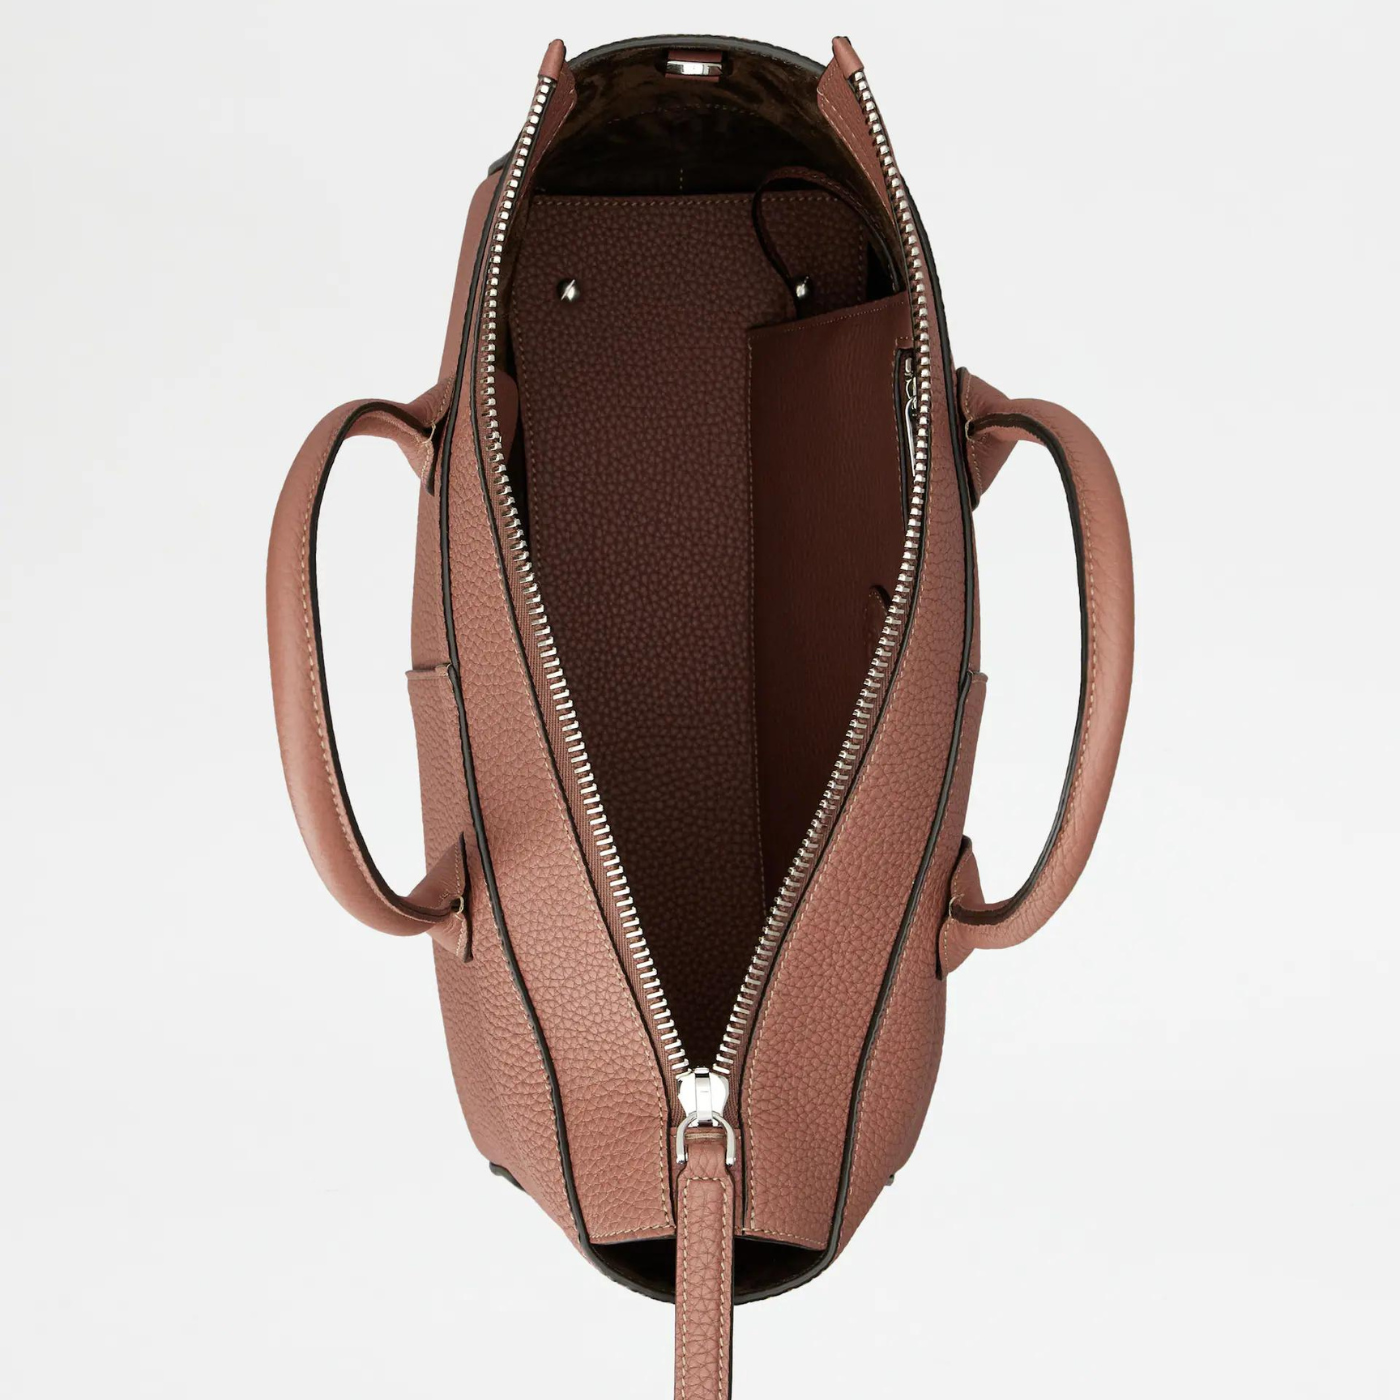 Di Bag in Leather Medium in Light Brown Handbags TOD'S - LOLAMIR